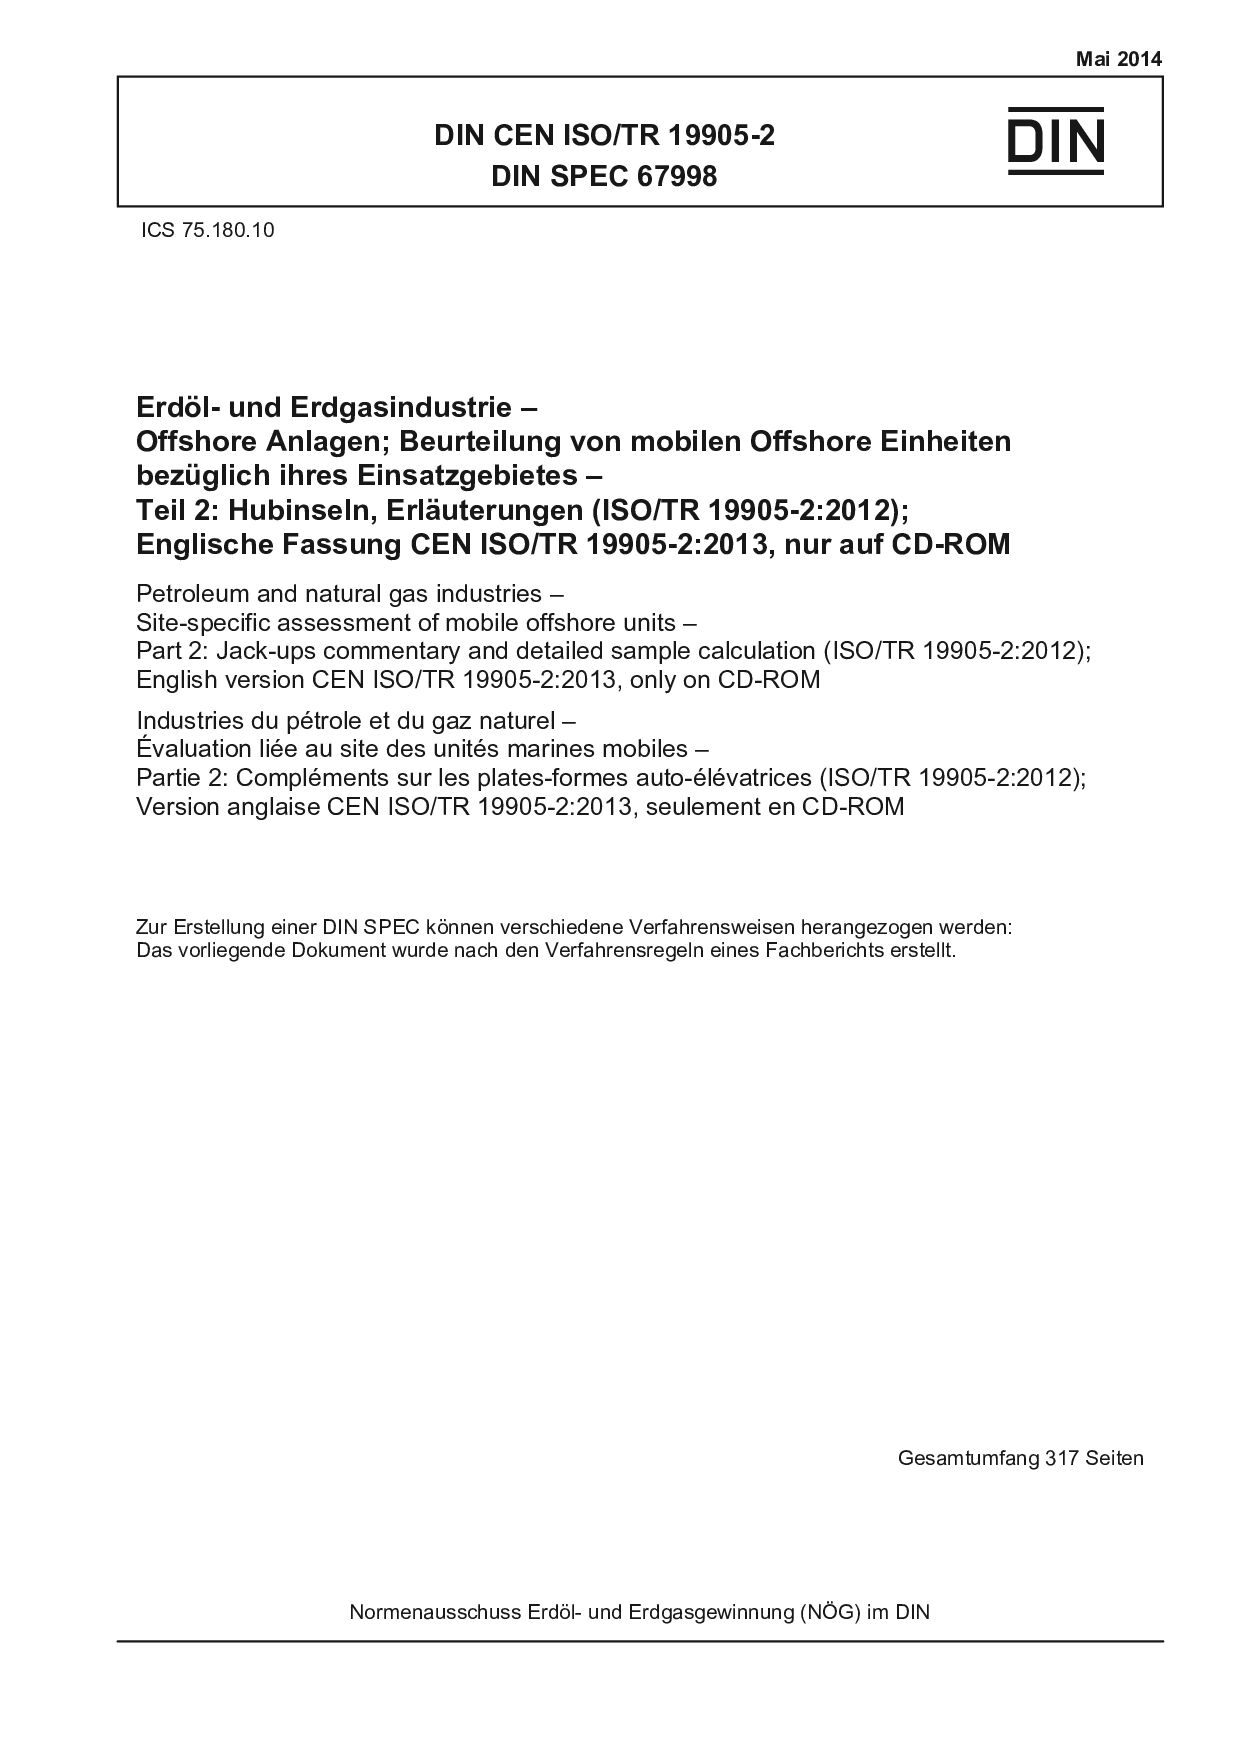 DIN CEN ISO/TR 19905-2:2014